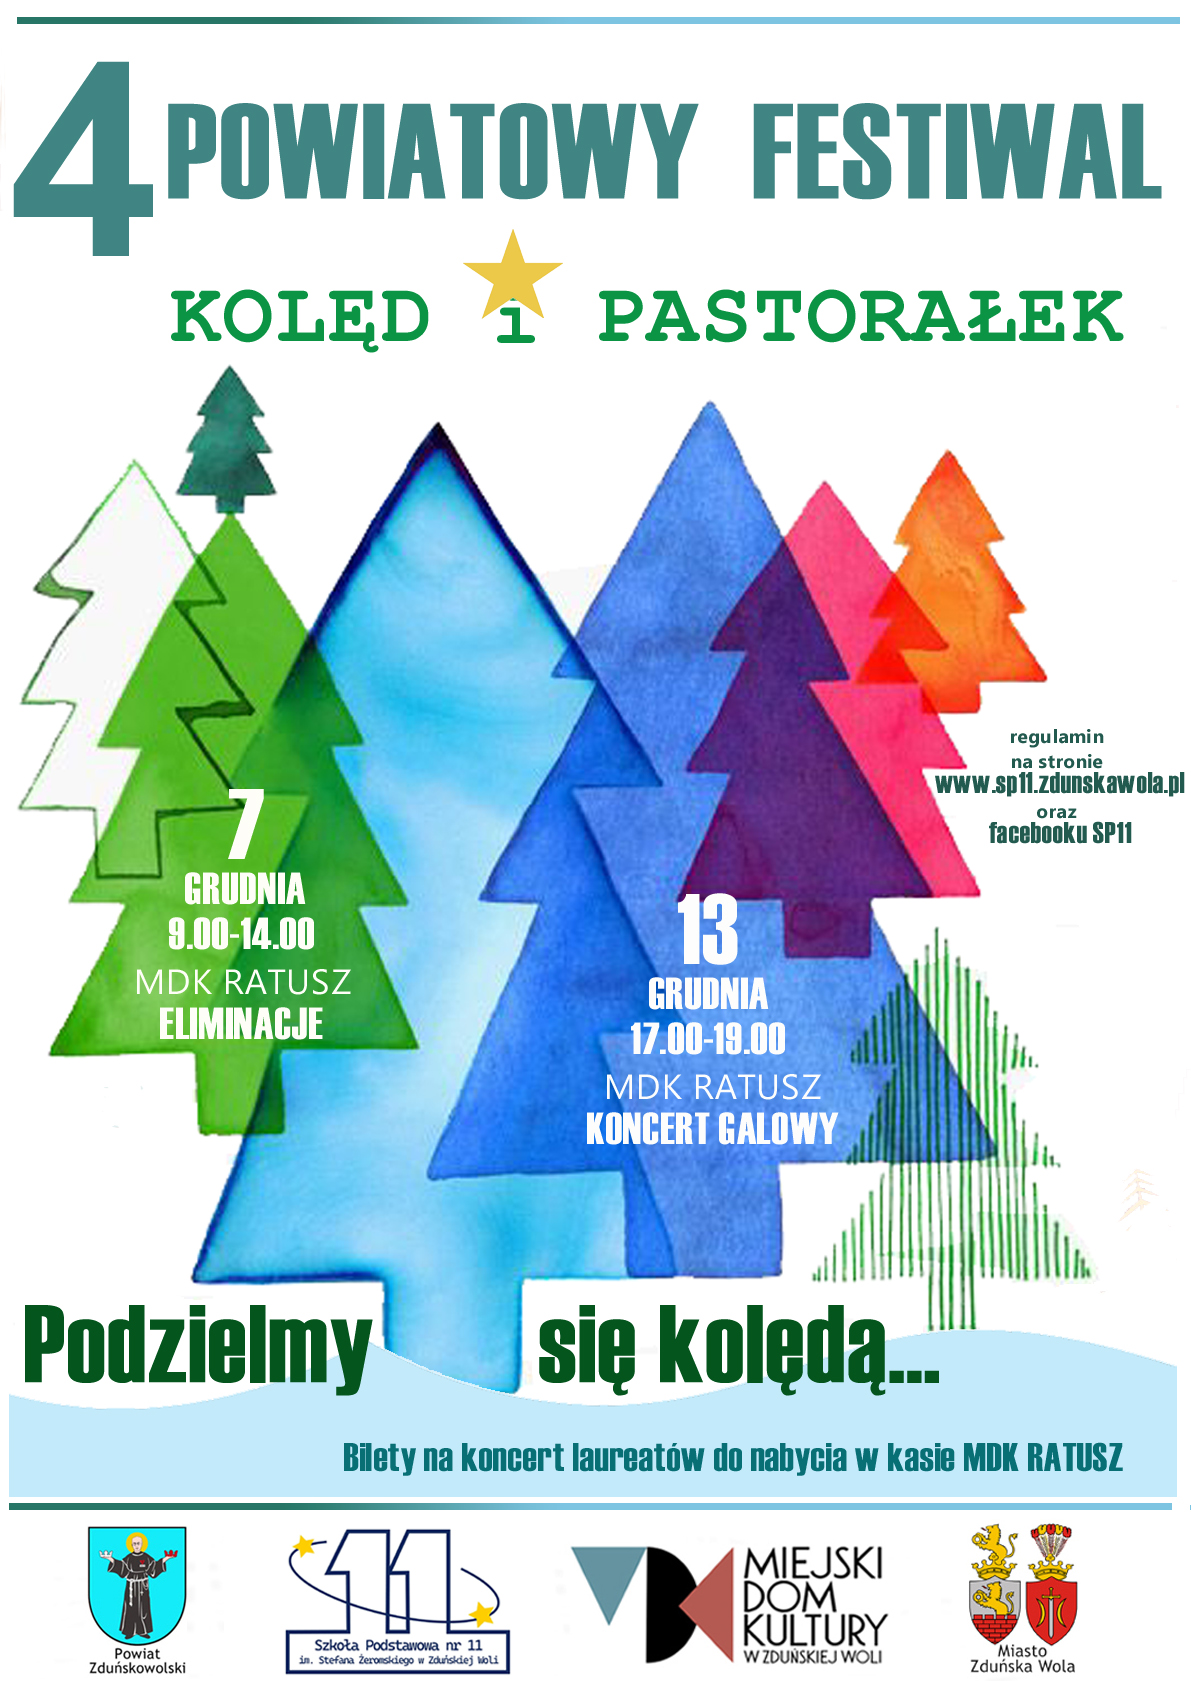 Napis 4 Powiatowy Festiwal Kolęd i Pastorałek. Kolorowe choinki - grafiki, u dołu strony loga organizatorów